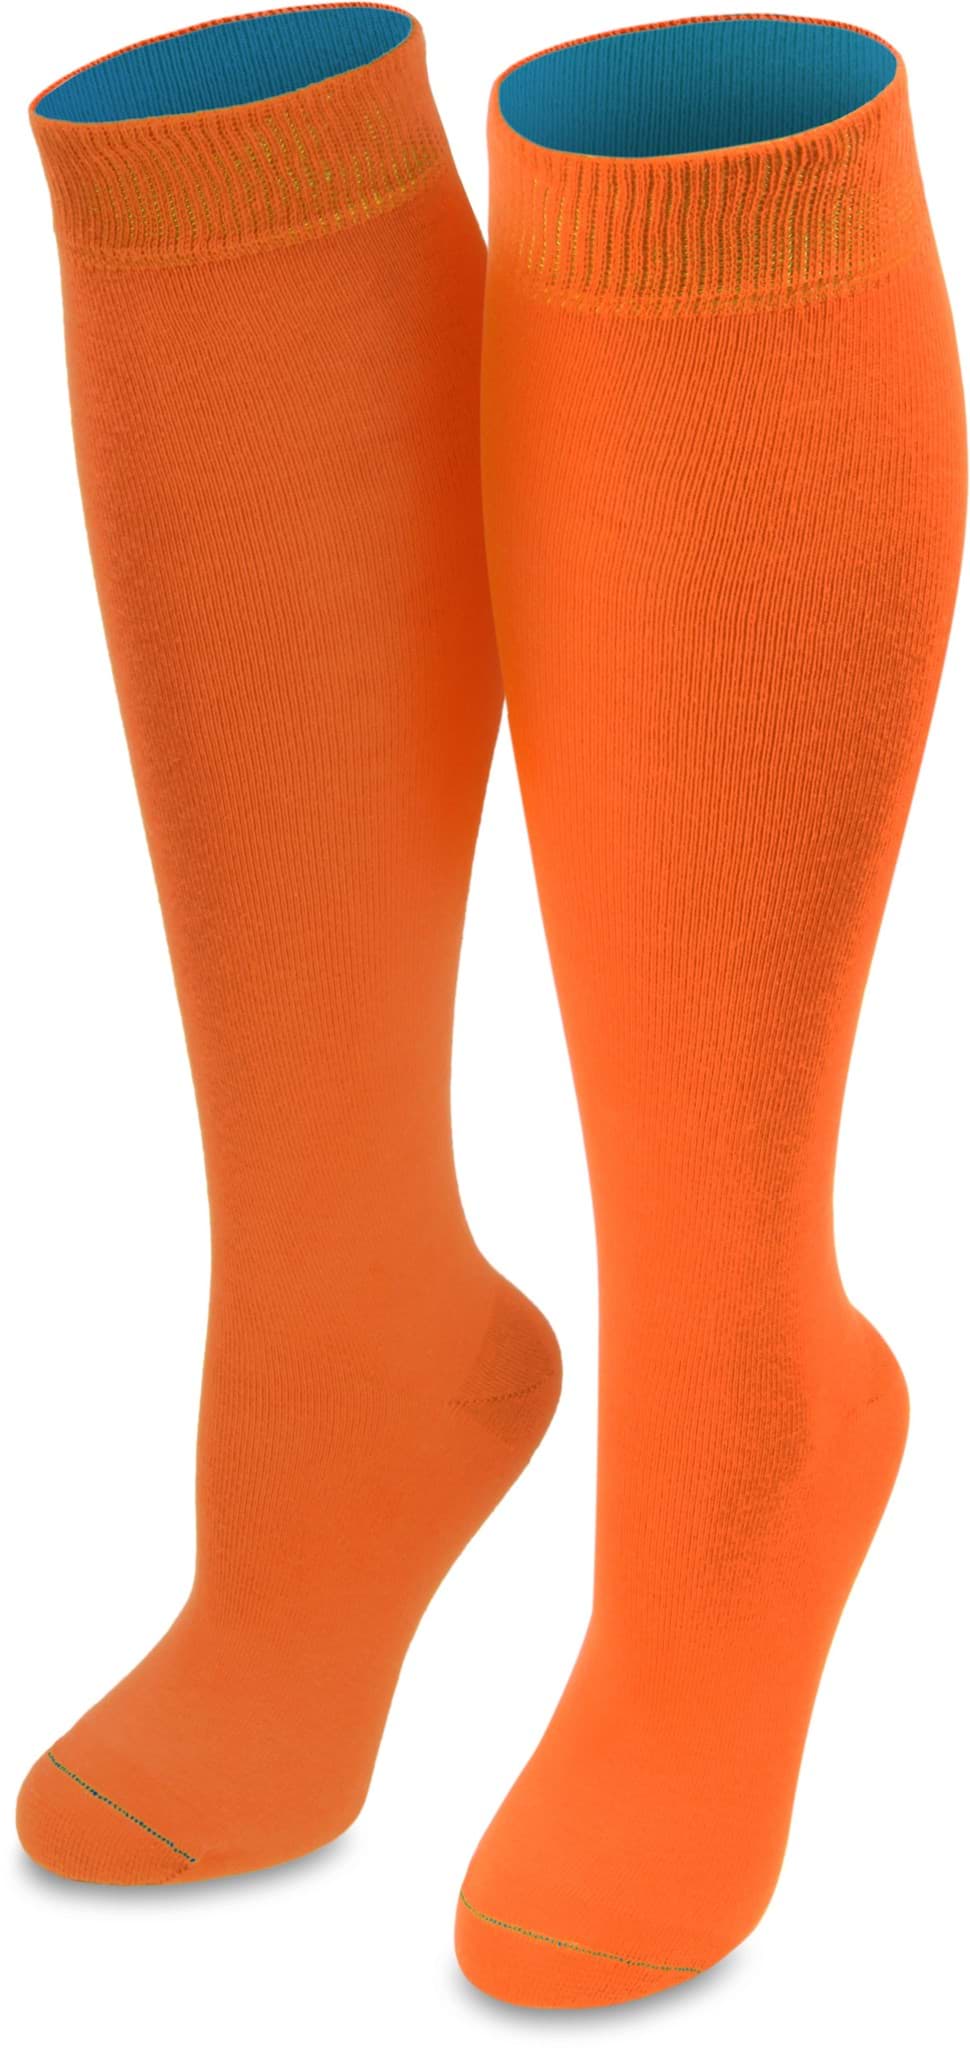 Bild von 1 Paar Kniestrümpfe „Bi-Color“ mit farbig abgesetztem Bund Orange/Türkis